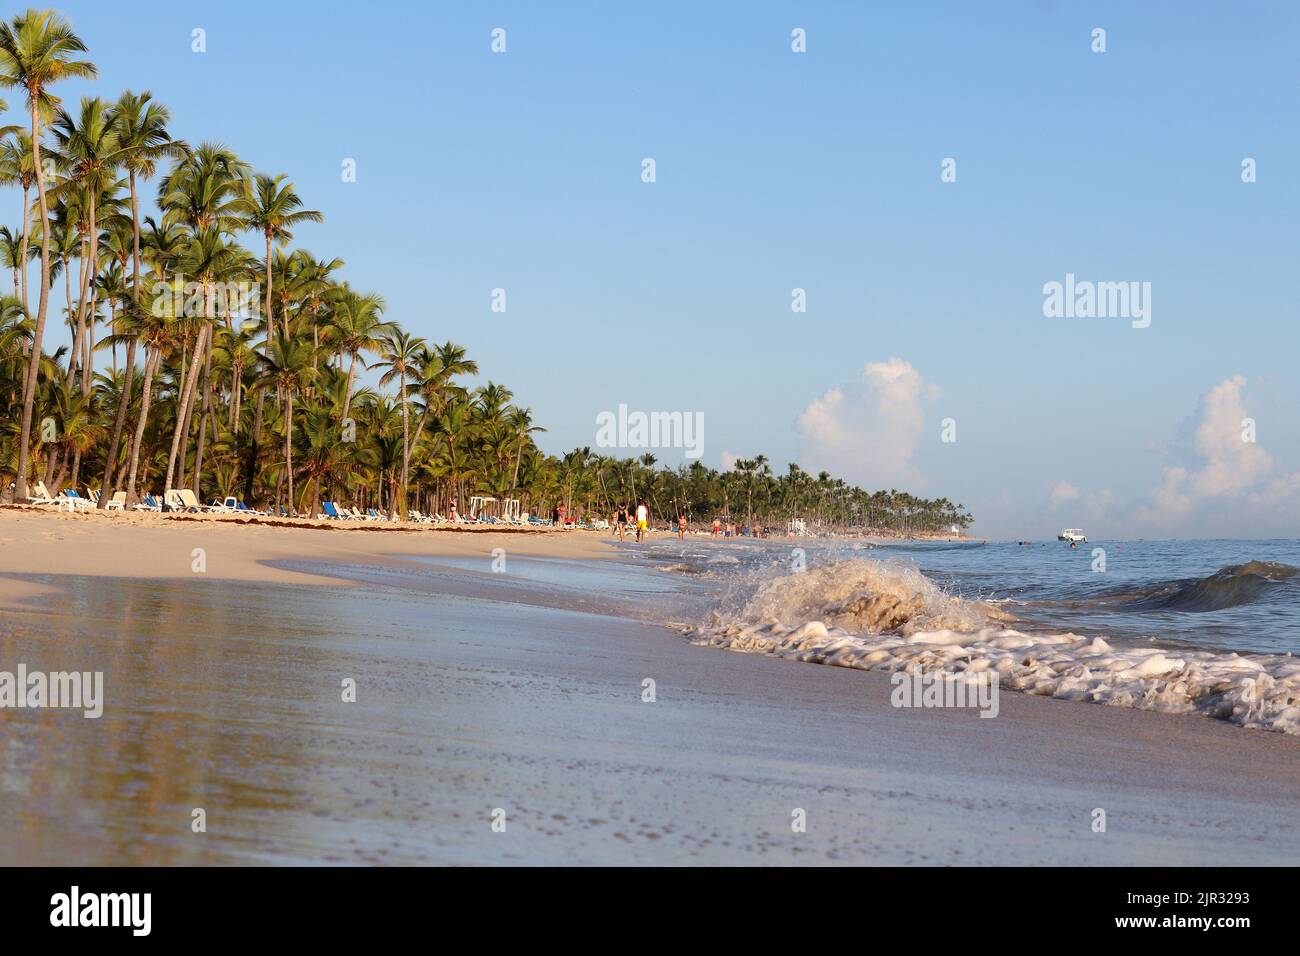 Vista a la playa tropical con gente bronceándose y nadando, costa arenosa del océano y palmeras de coco Foto de stock